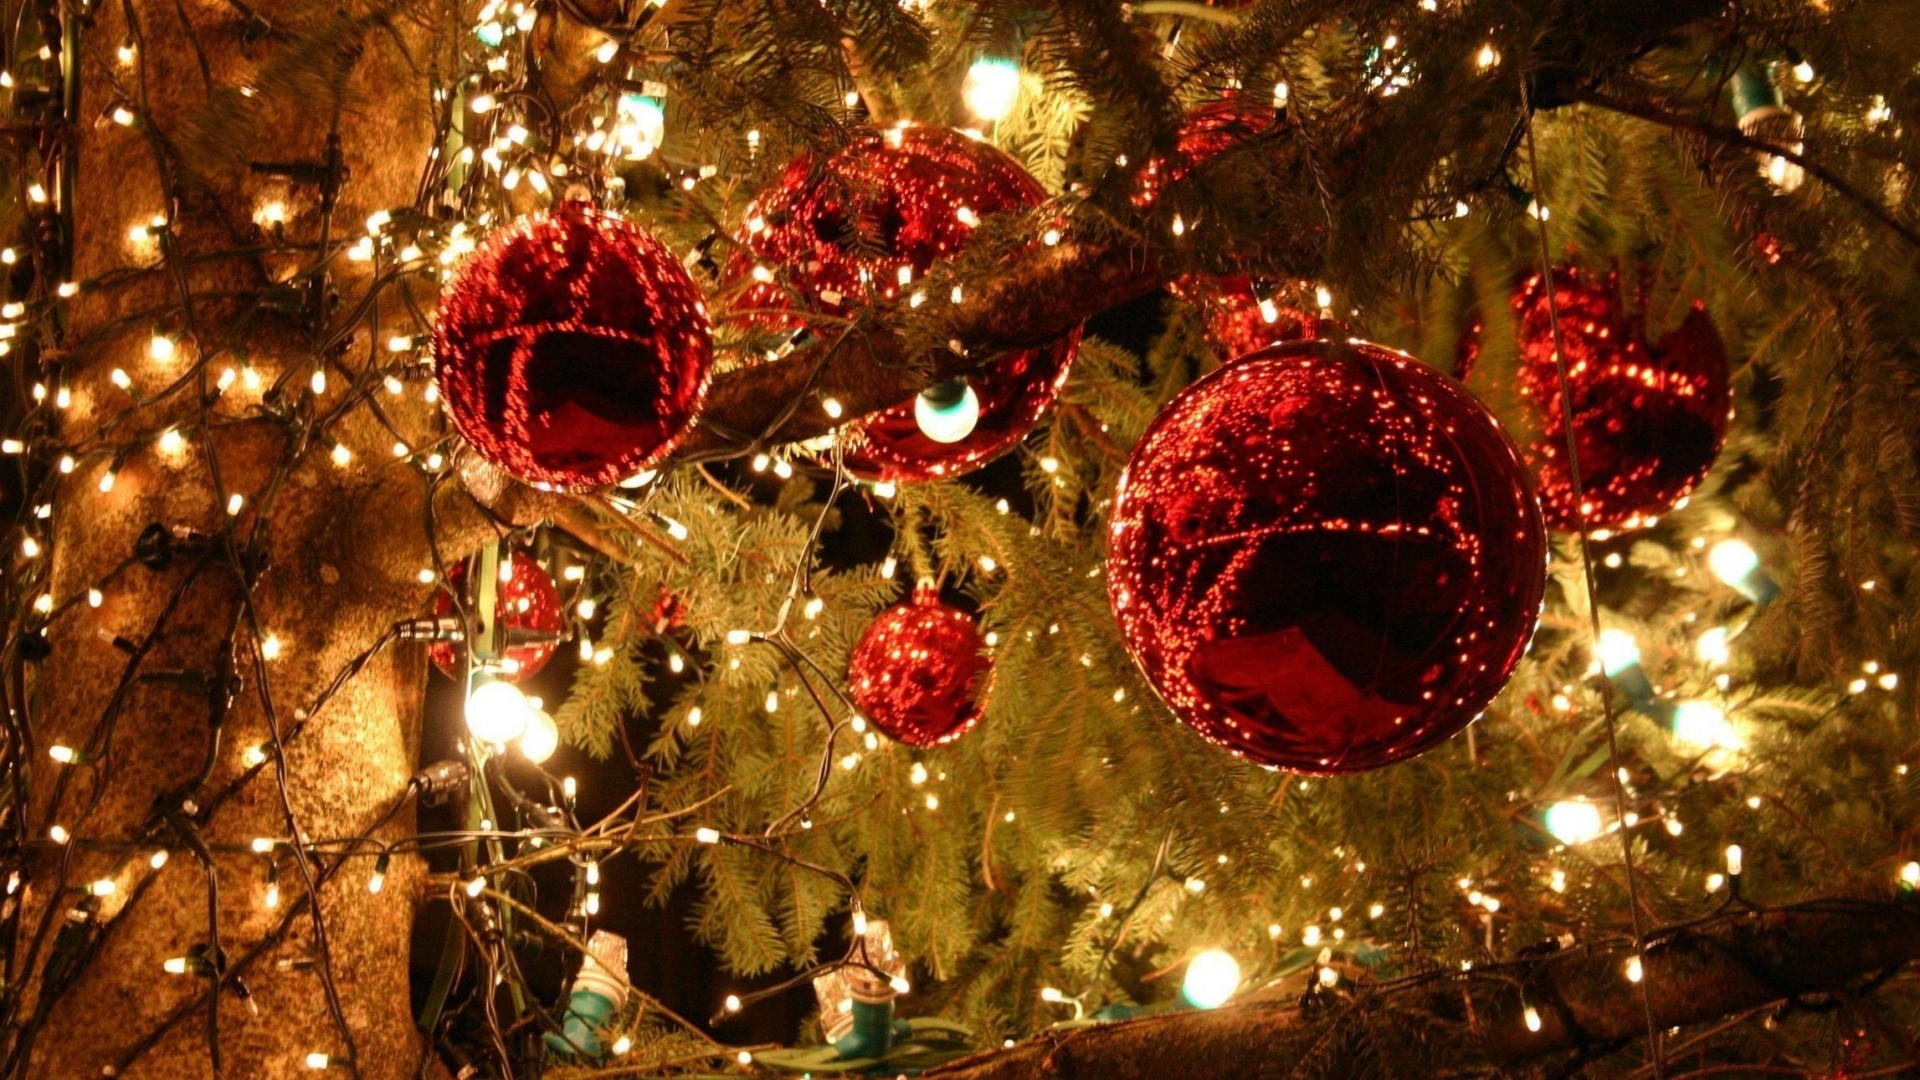 Cùng với những bóng đèn led đầy màu sắc và rực rỡ, một cây thông Giáng sinh trang trí đẹp sẽ là điều mà bất cứ ai cũng muốn sở hữu trong nhà mình. Hãy ngắm nhìn cây thông tuyệt đẹp này và đắm chìm trong không gian nghỉ ngơi đáng nhớ nhất.